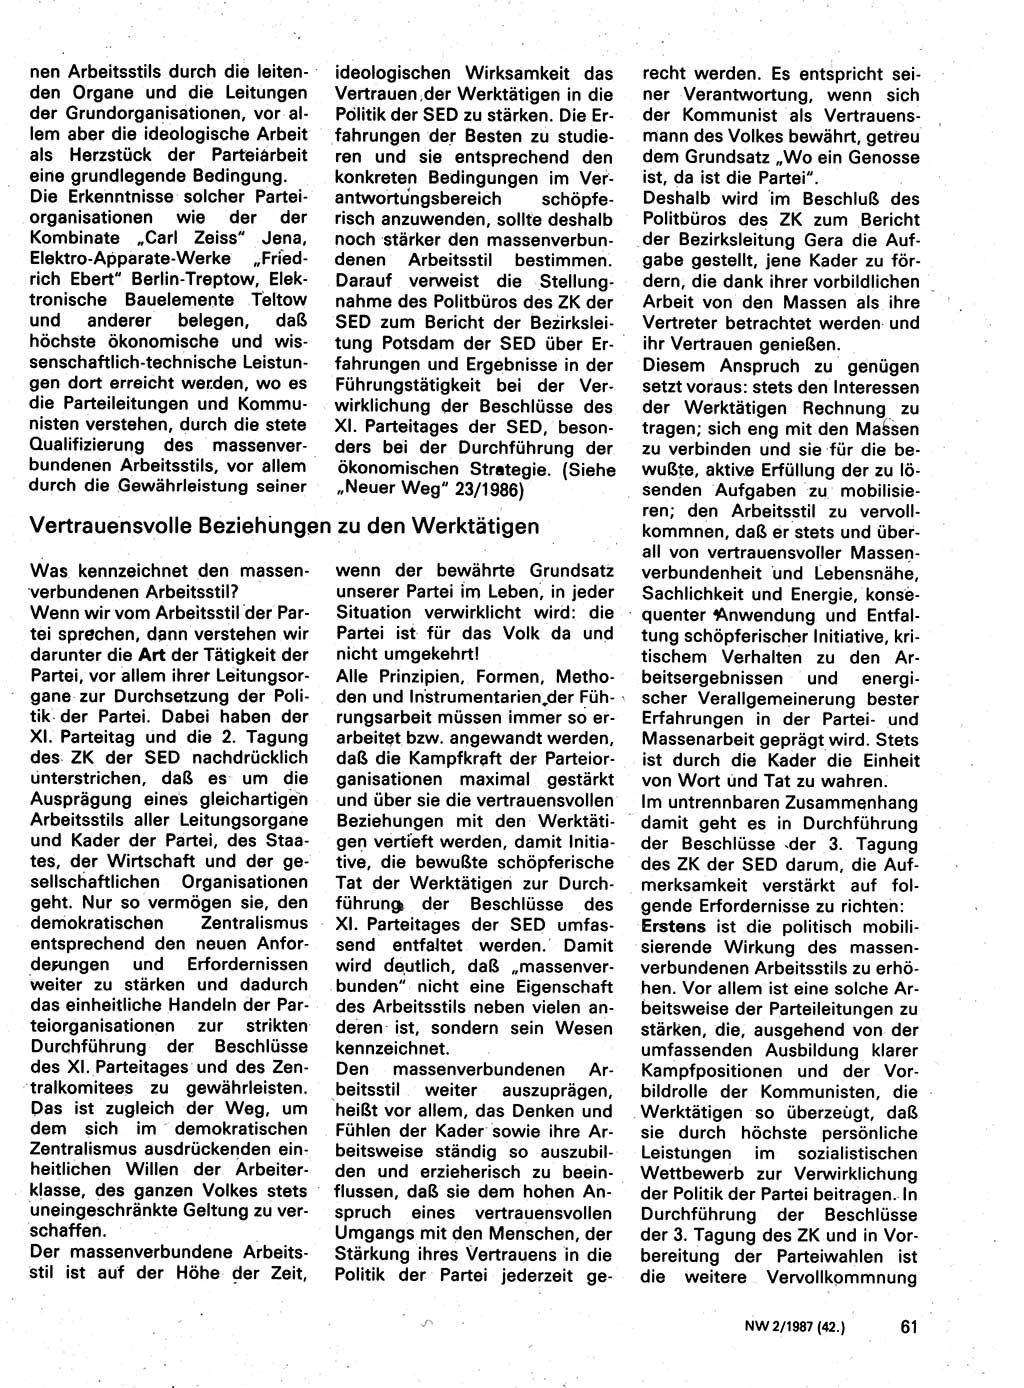 Neuer Weg (NW), Organ des Zentralkomitees (ZK) der SED (Sozialistische Einheitspartei Deutschlands) für Fragen des Parteilebens, 42. Jahrgang [Deutsche Demokratische Republik (DDR)] 1987, Seite 61 (NW ZK SED DDR 1987, S. 61)